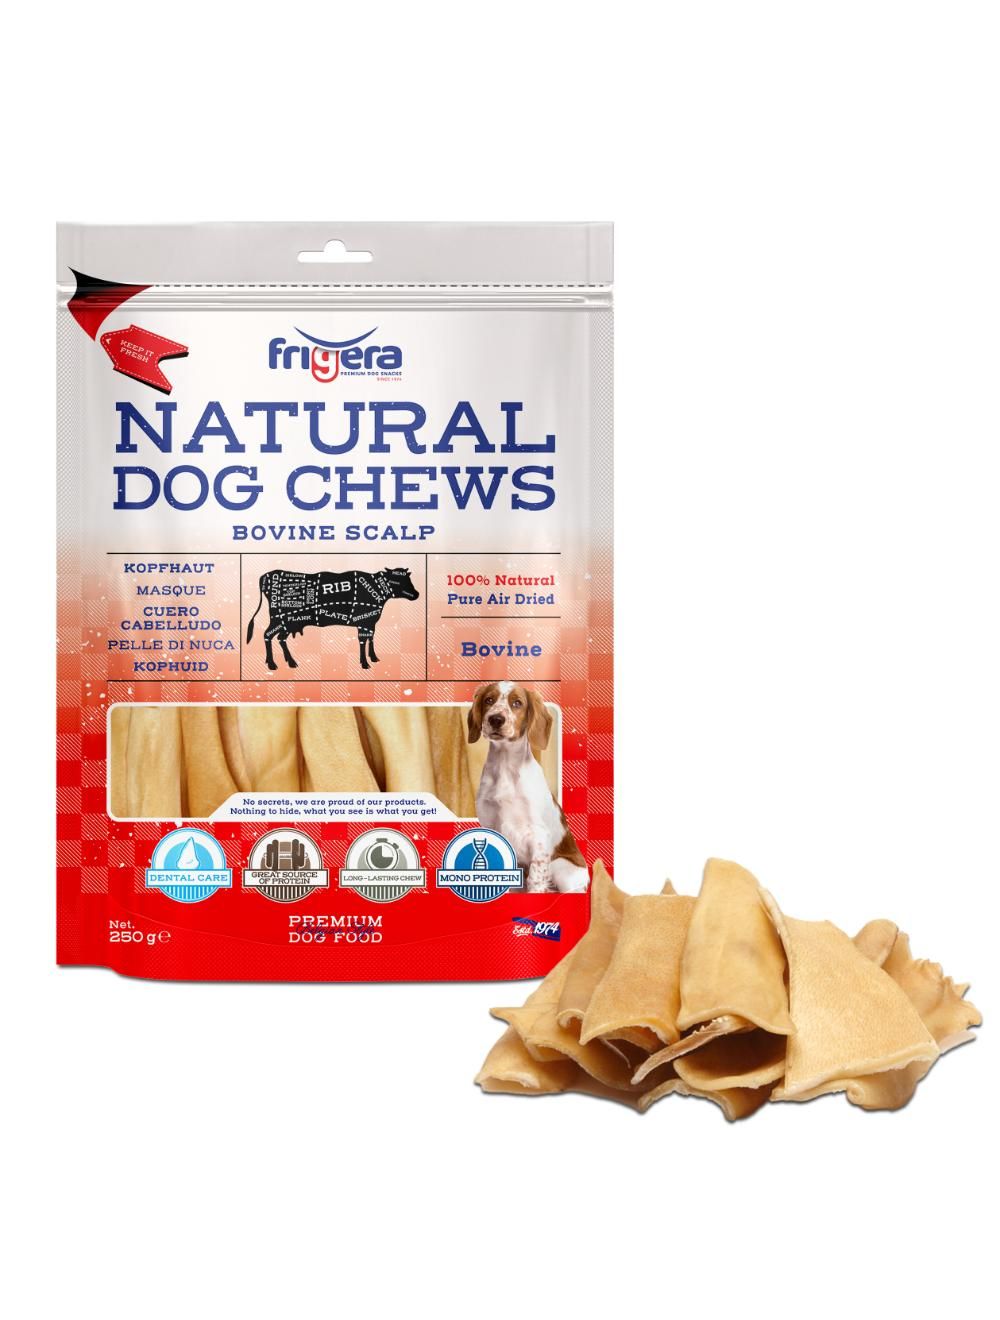 Frigera - Natural Dog Chews Bovine scalp 250gr - (402285851803) - Kjæledyr og utstyr